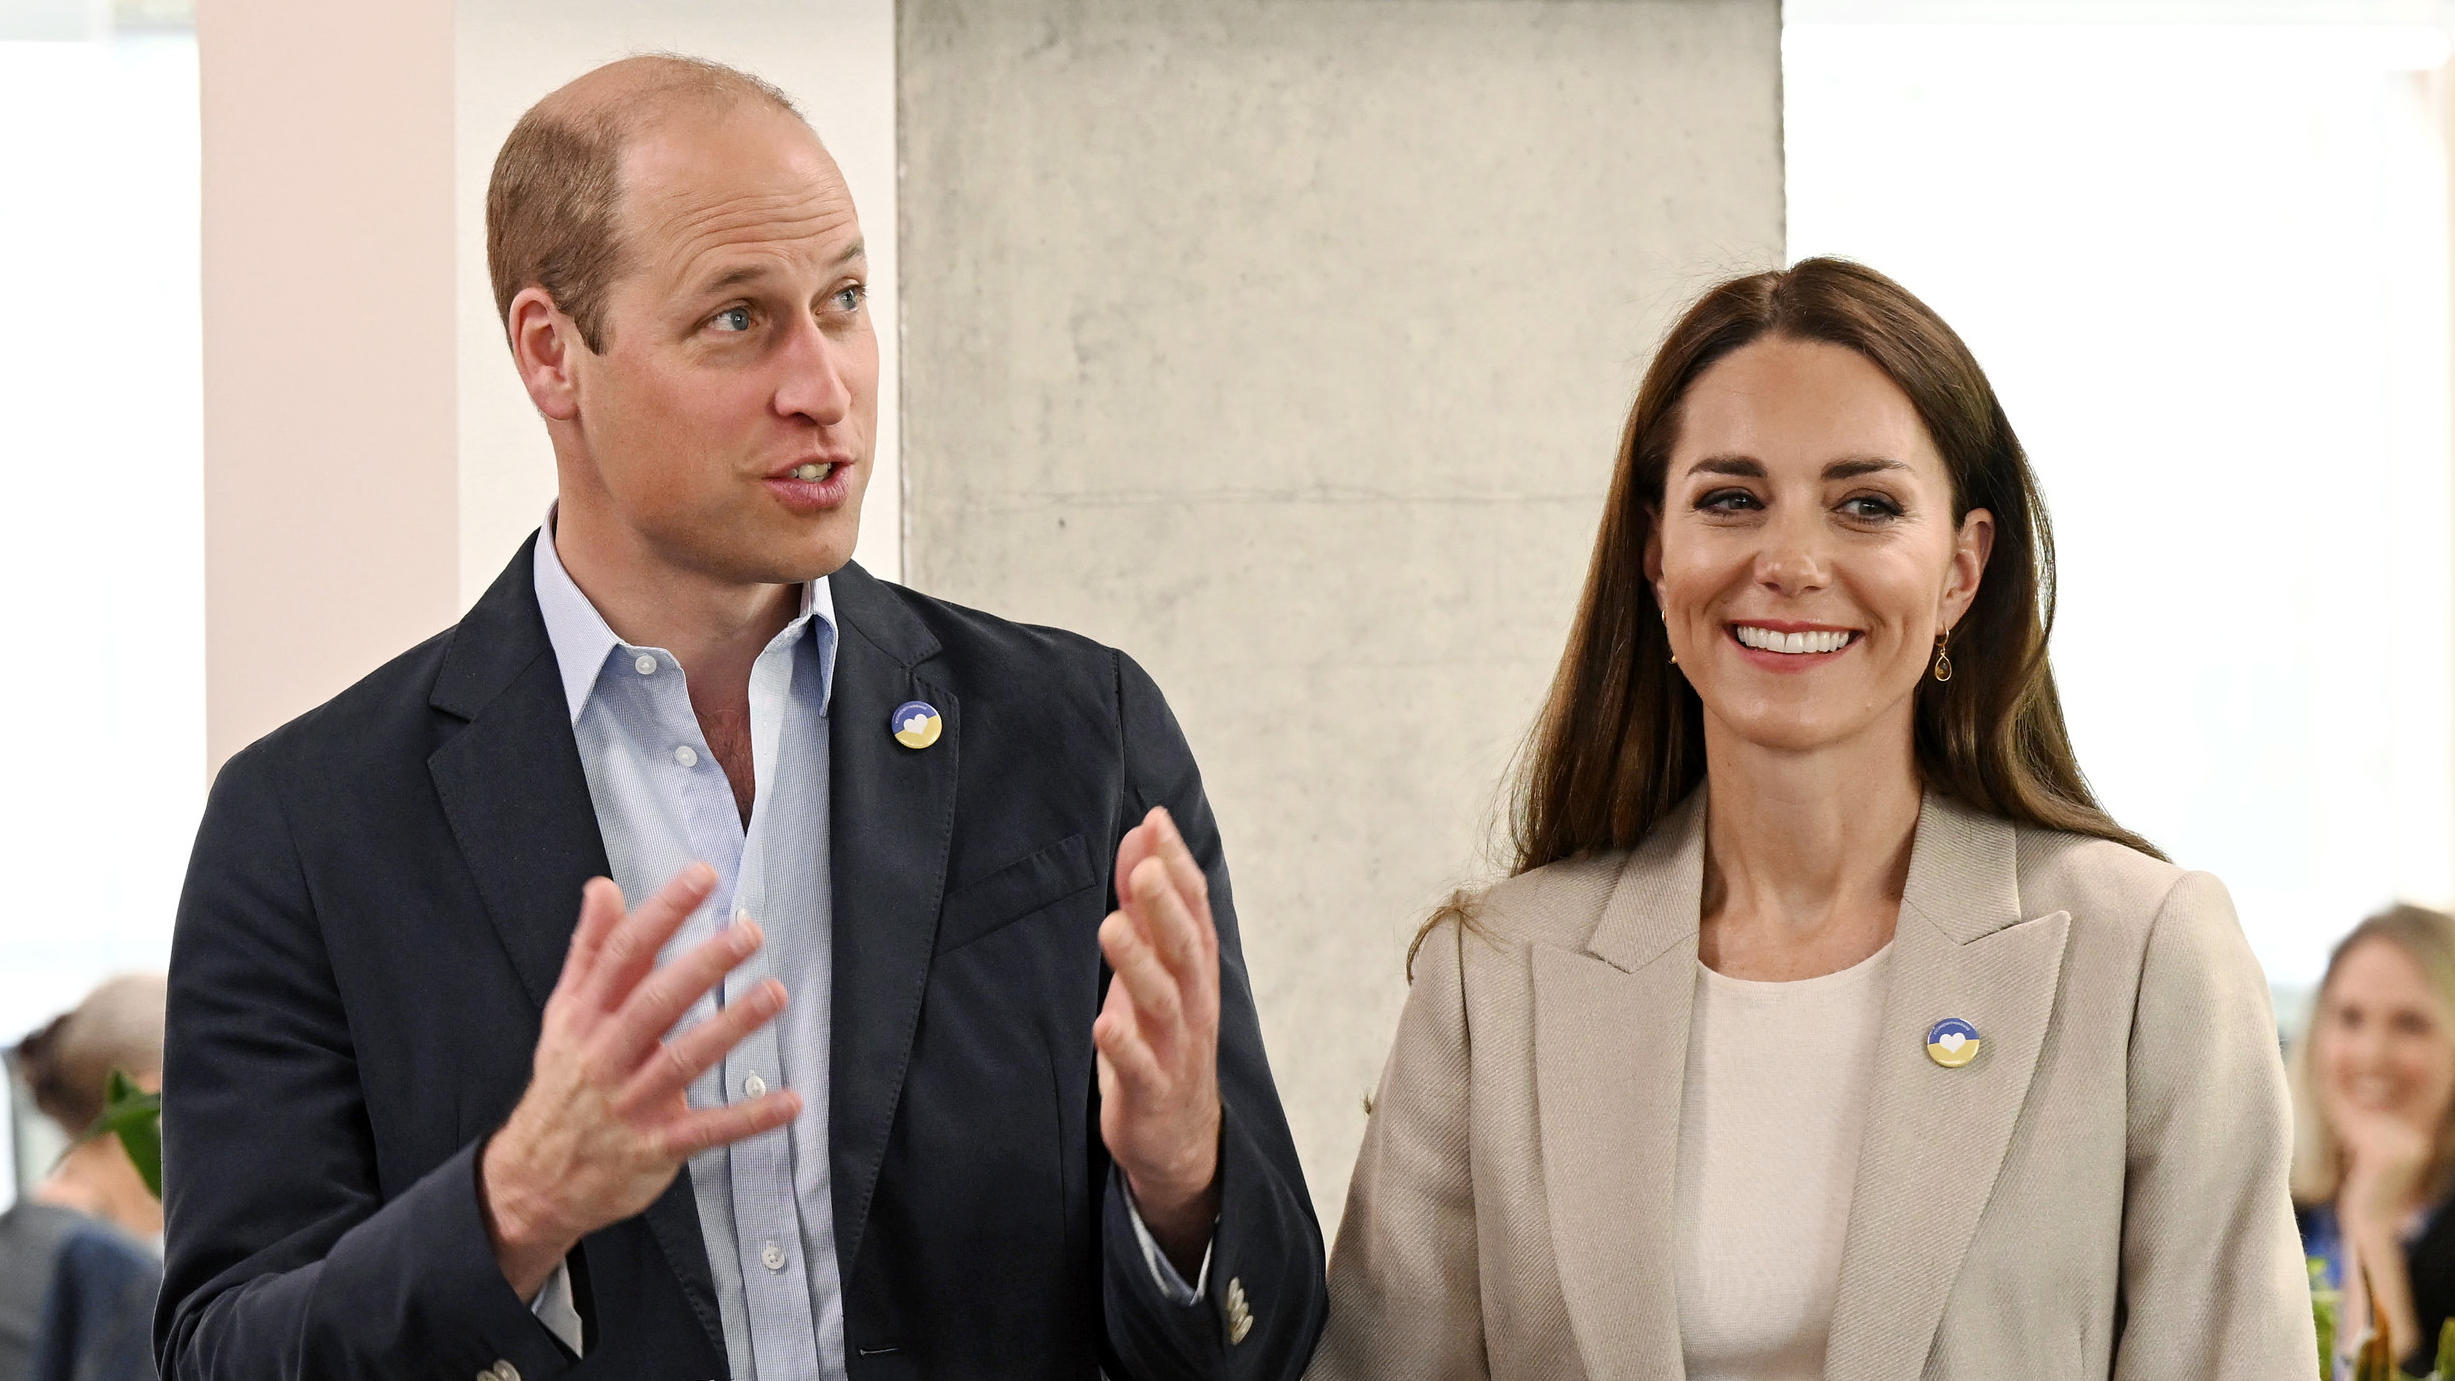 Prinz William und Herzogin Kate gehen mit diesem Clip auf TikTok viral